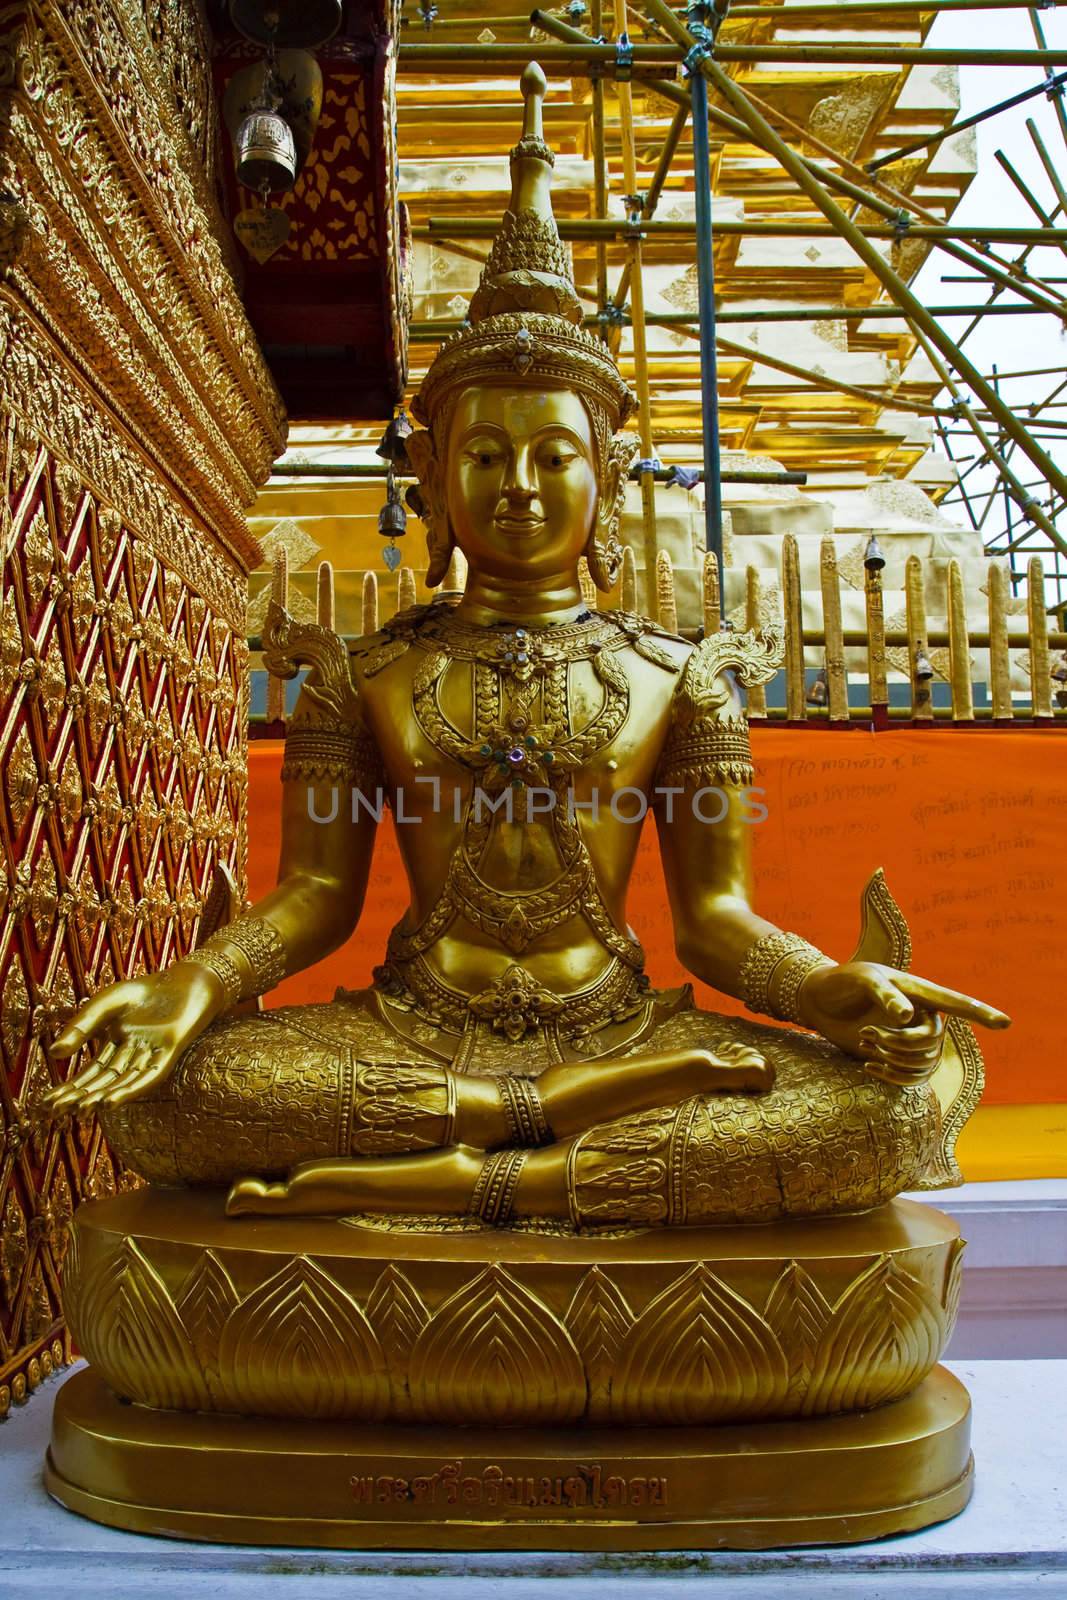 Sri Ariya image in Wat Doi suthep temple